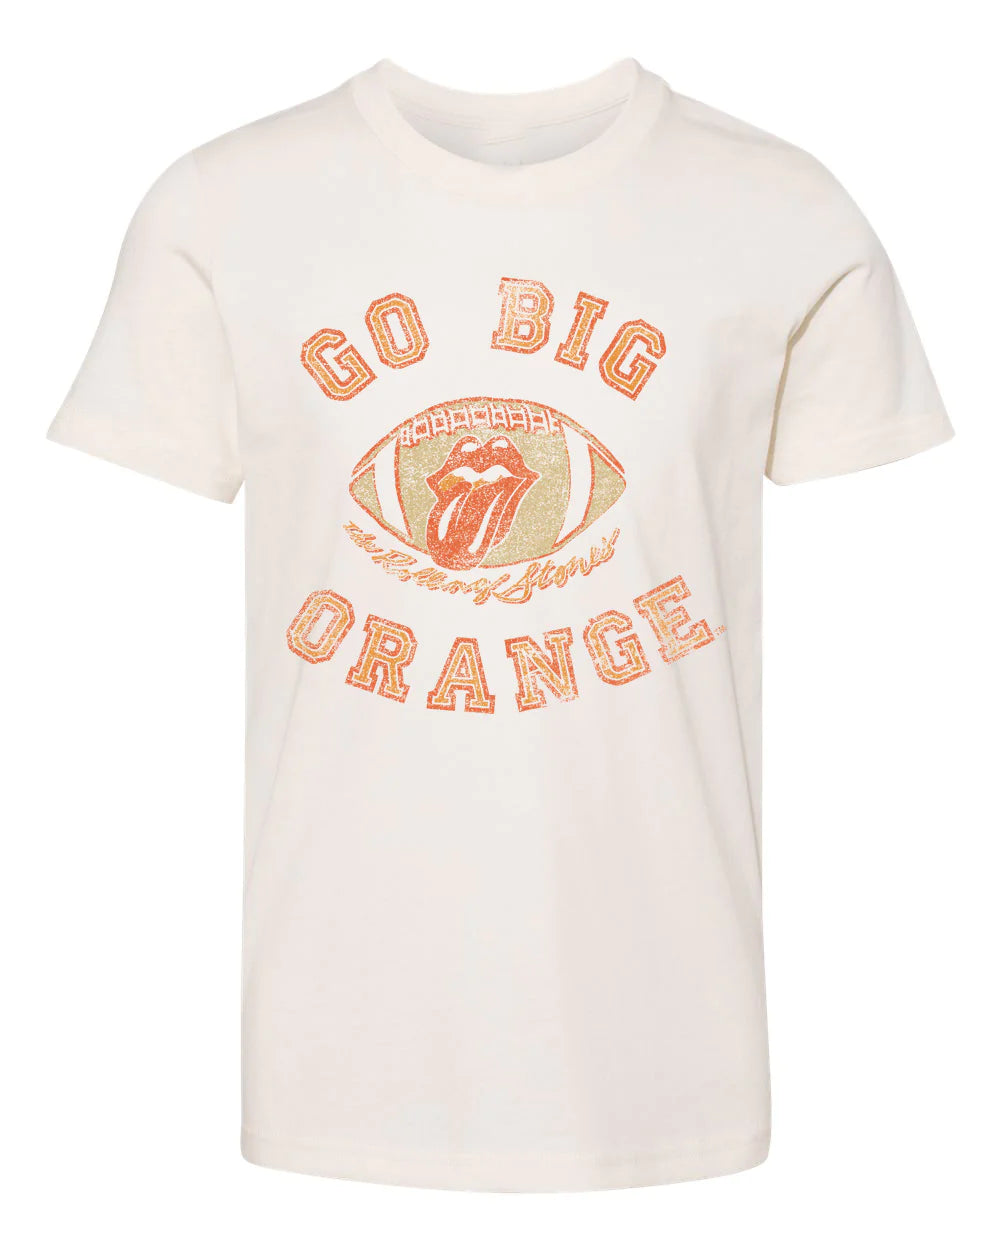 Go Big Orange Rolling Stones Tee | Children's